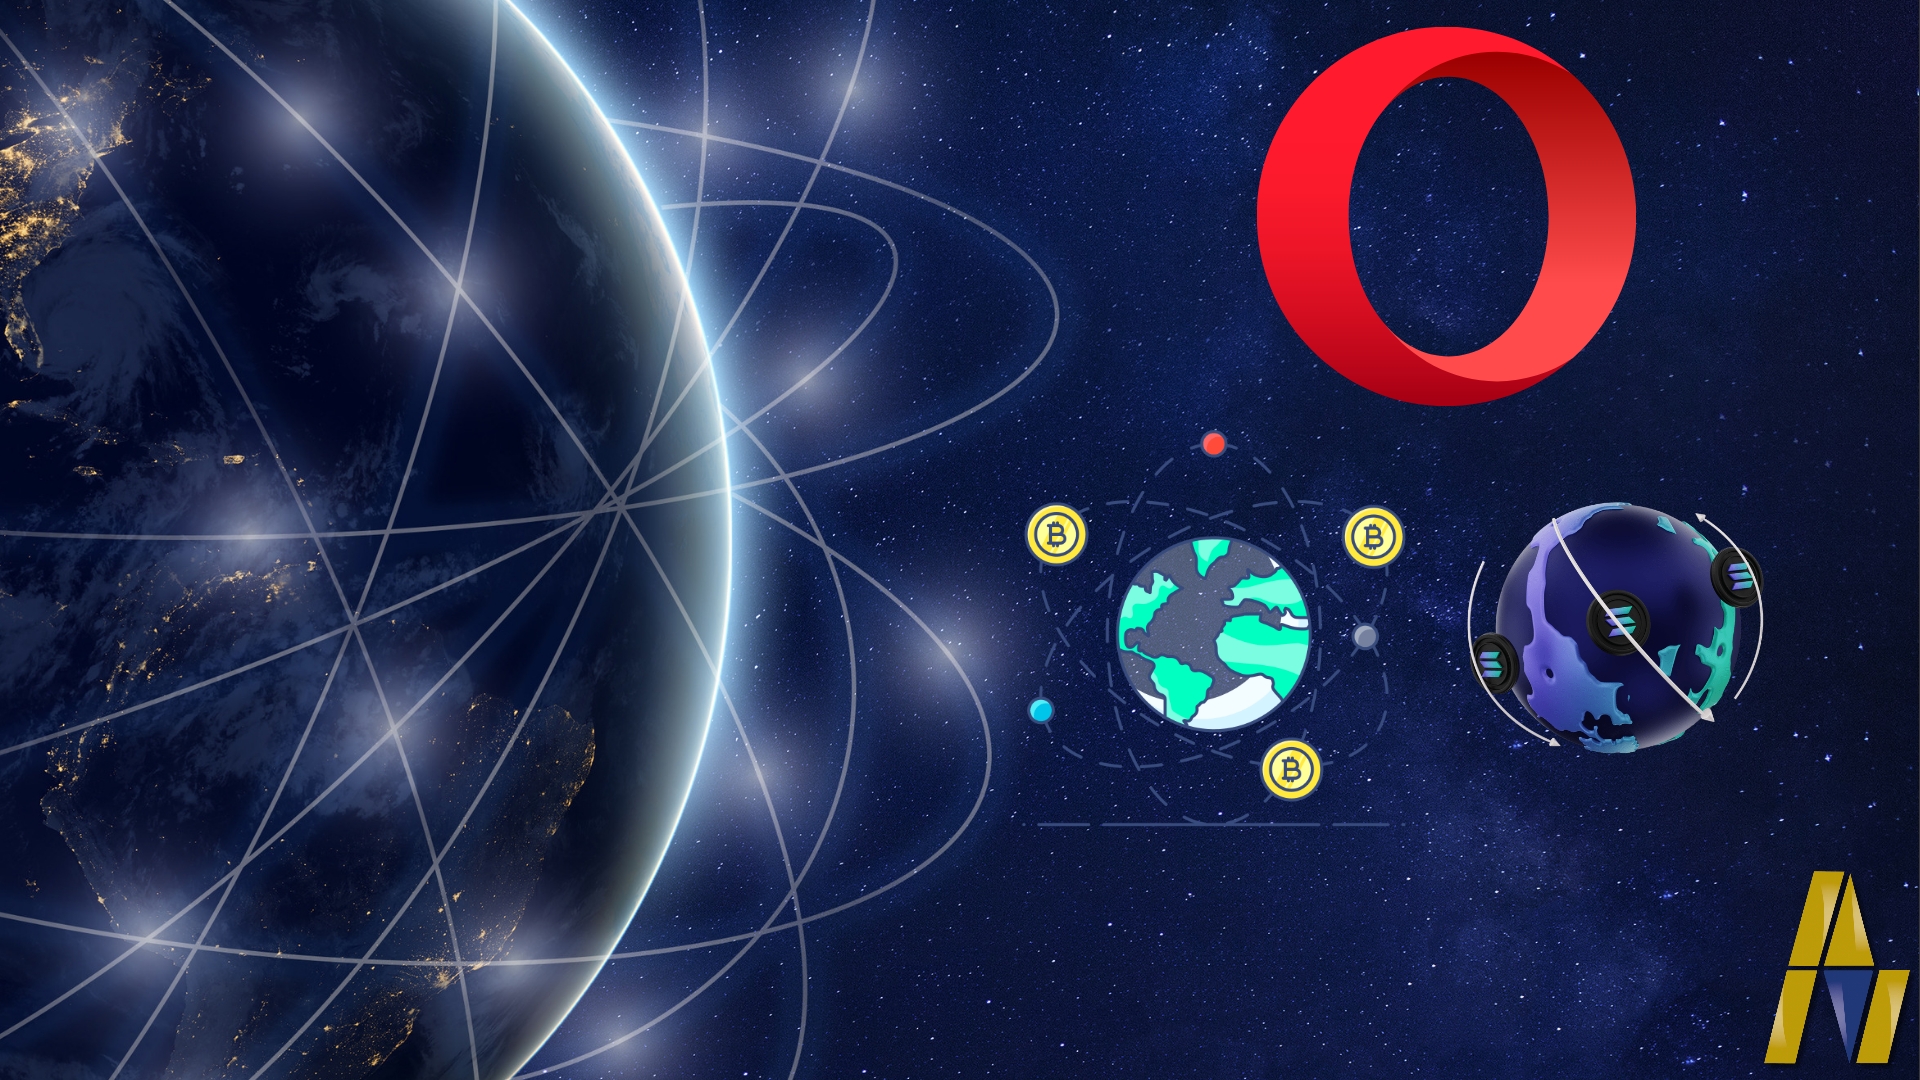 متصفح الويب Opera يدعم شبكات البلوكتشين (البيتكوين و سولانا وغيرها)